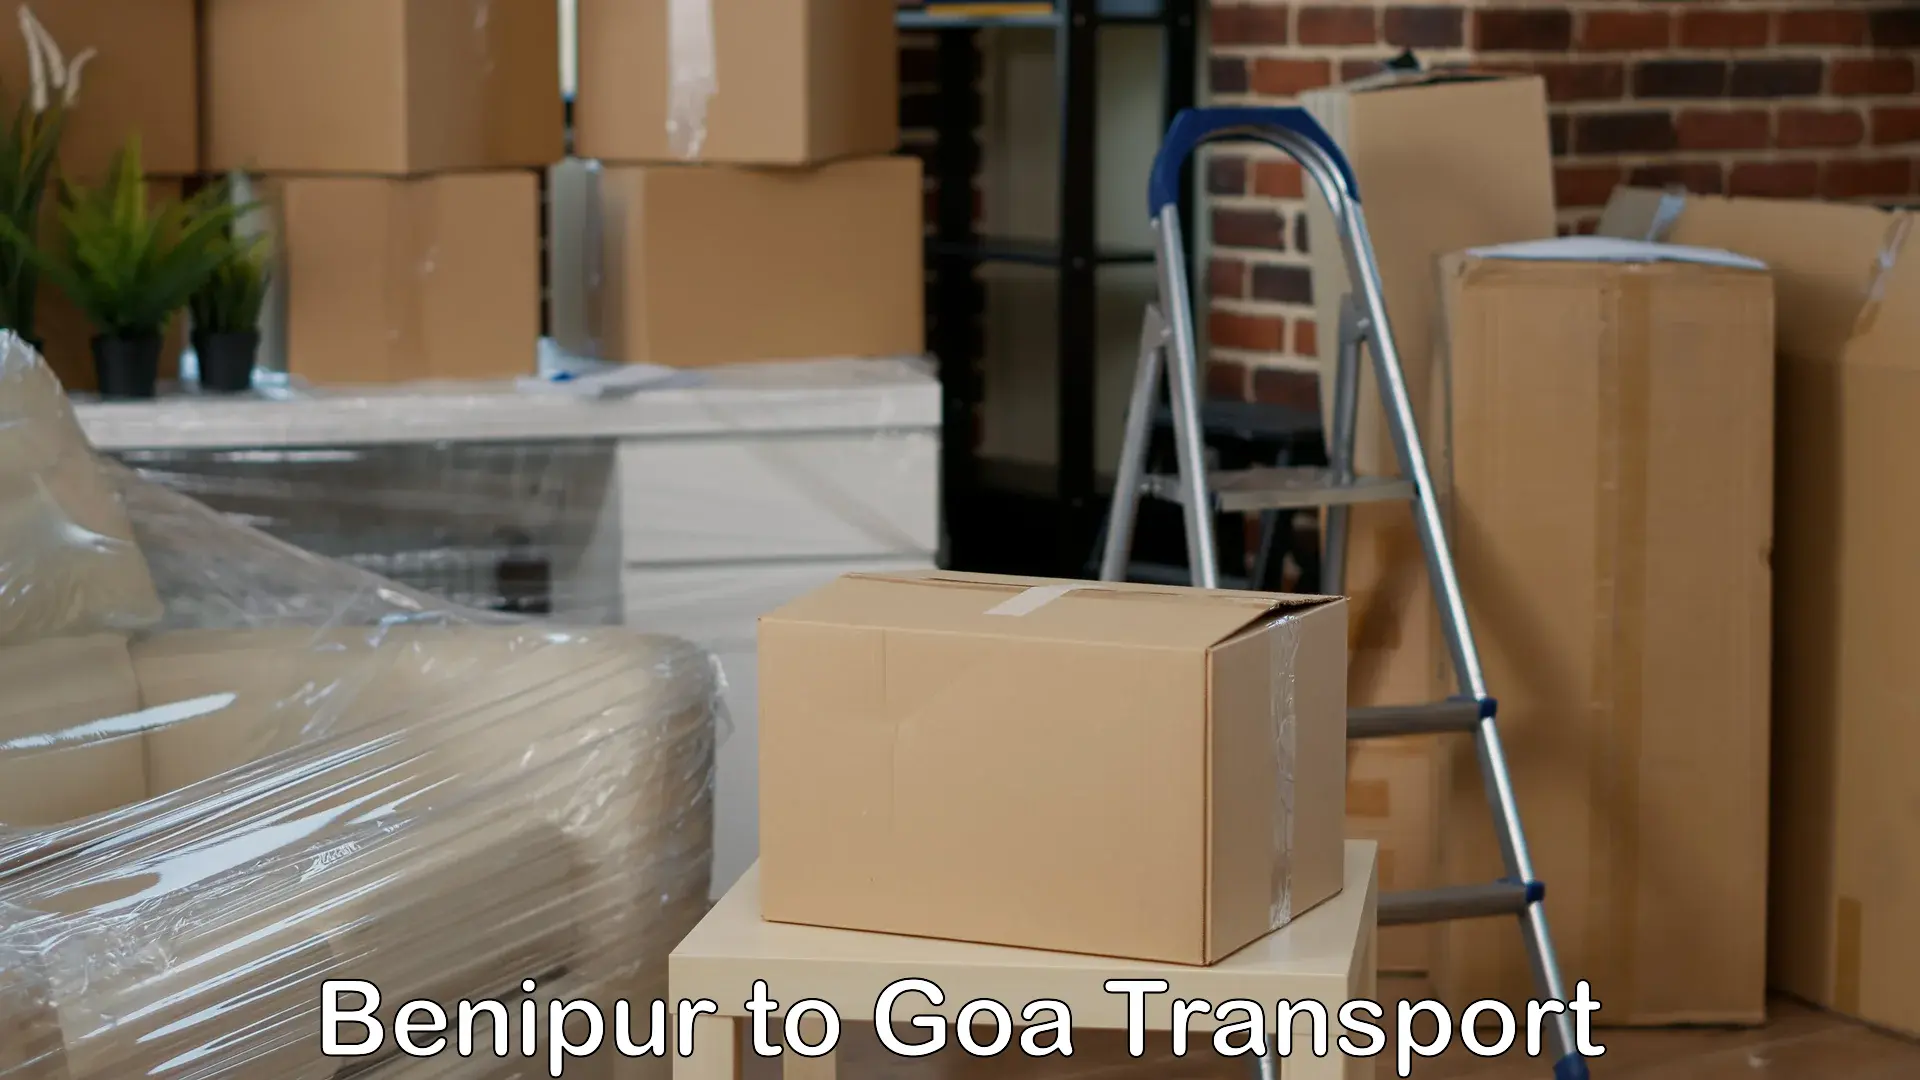 Road transport online services Benipur to Vasco da Gama